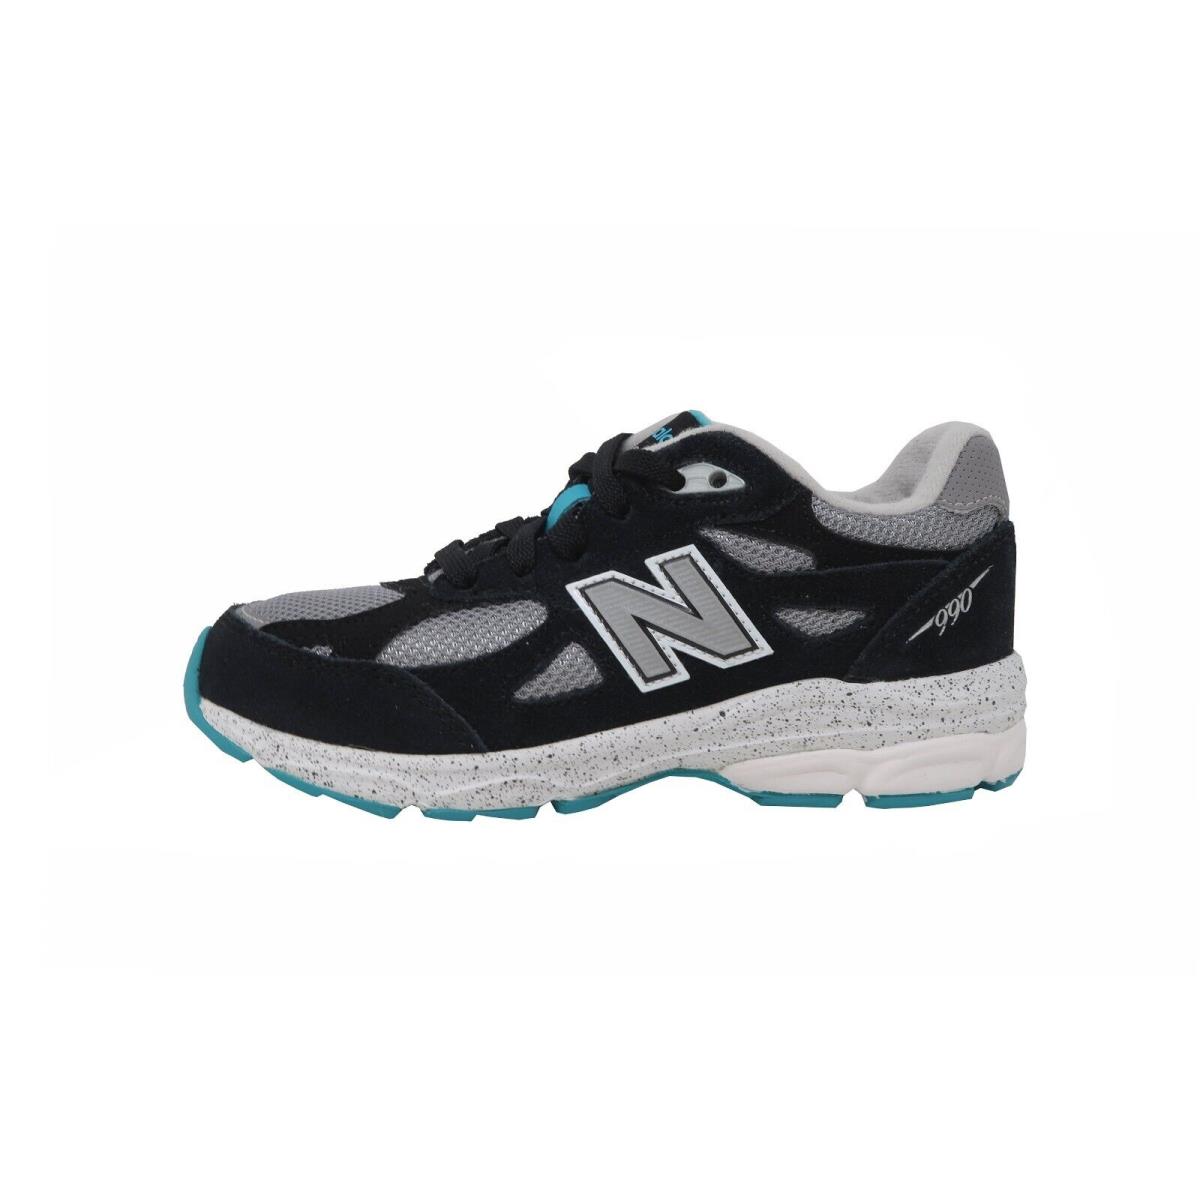 New Balance Little Kids 990 Running Shoes Sneakers KJ990OBP - Black